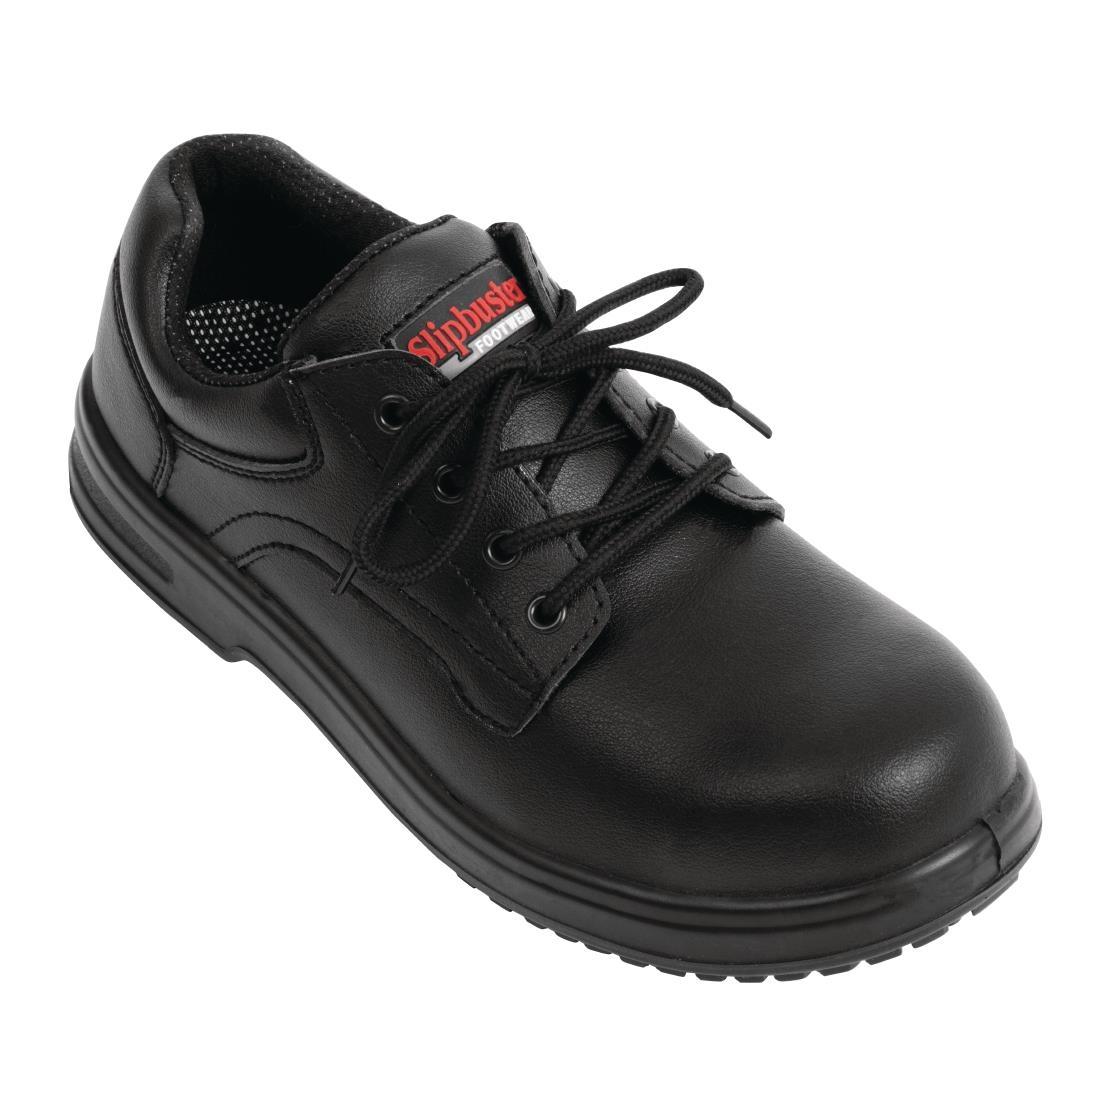 Slipbuster Basic Shoes Slip Resistant Black 38 - BB498-38  - 1